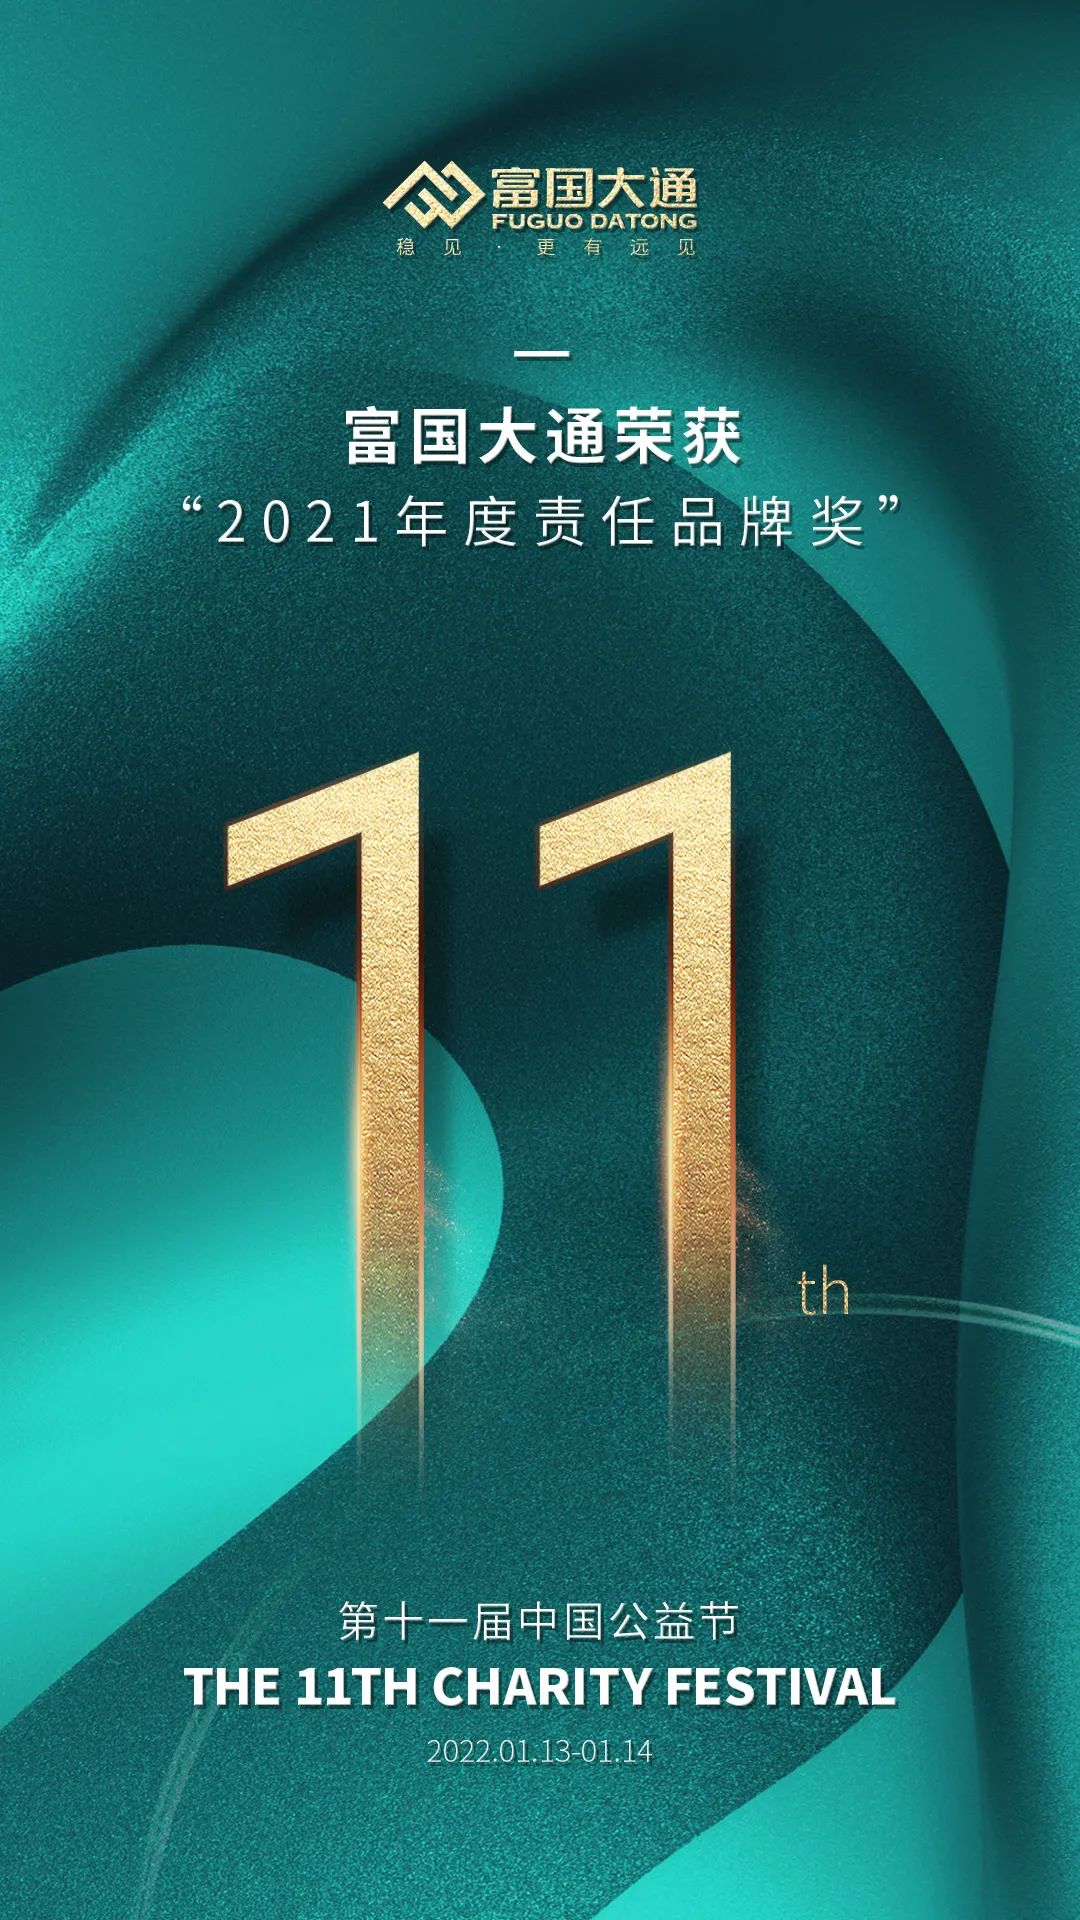 “担当责任传递爱，富国大通喜获中国公益节“2021年度责任品牌奖”